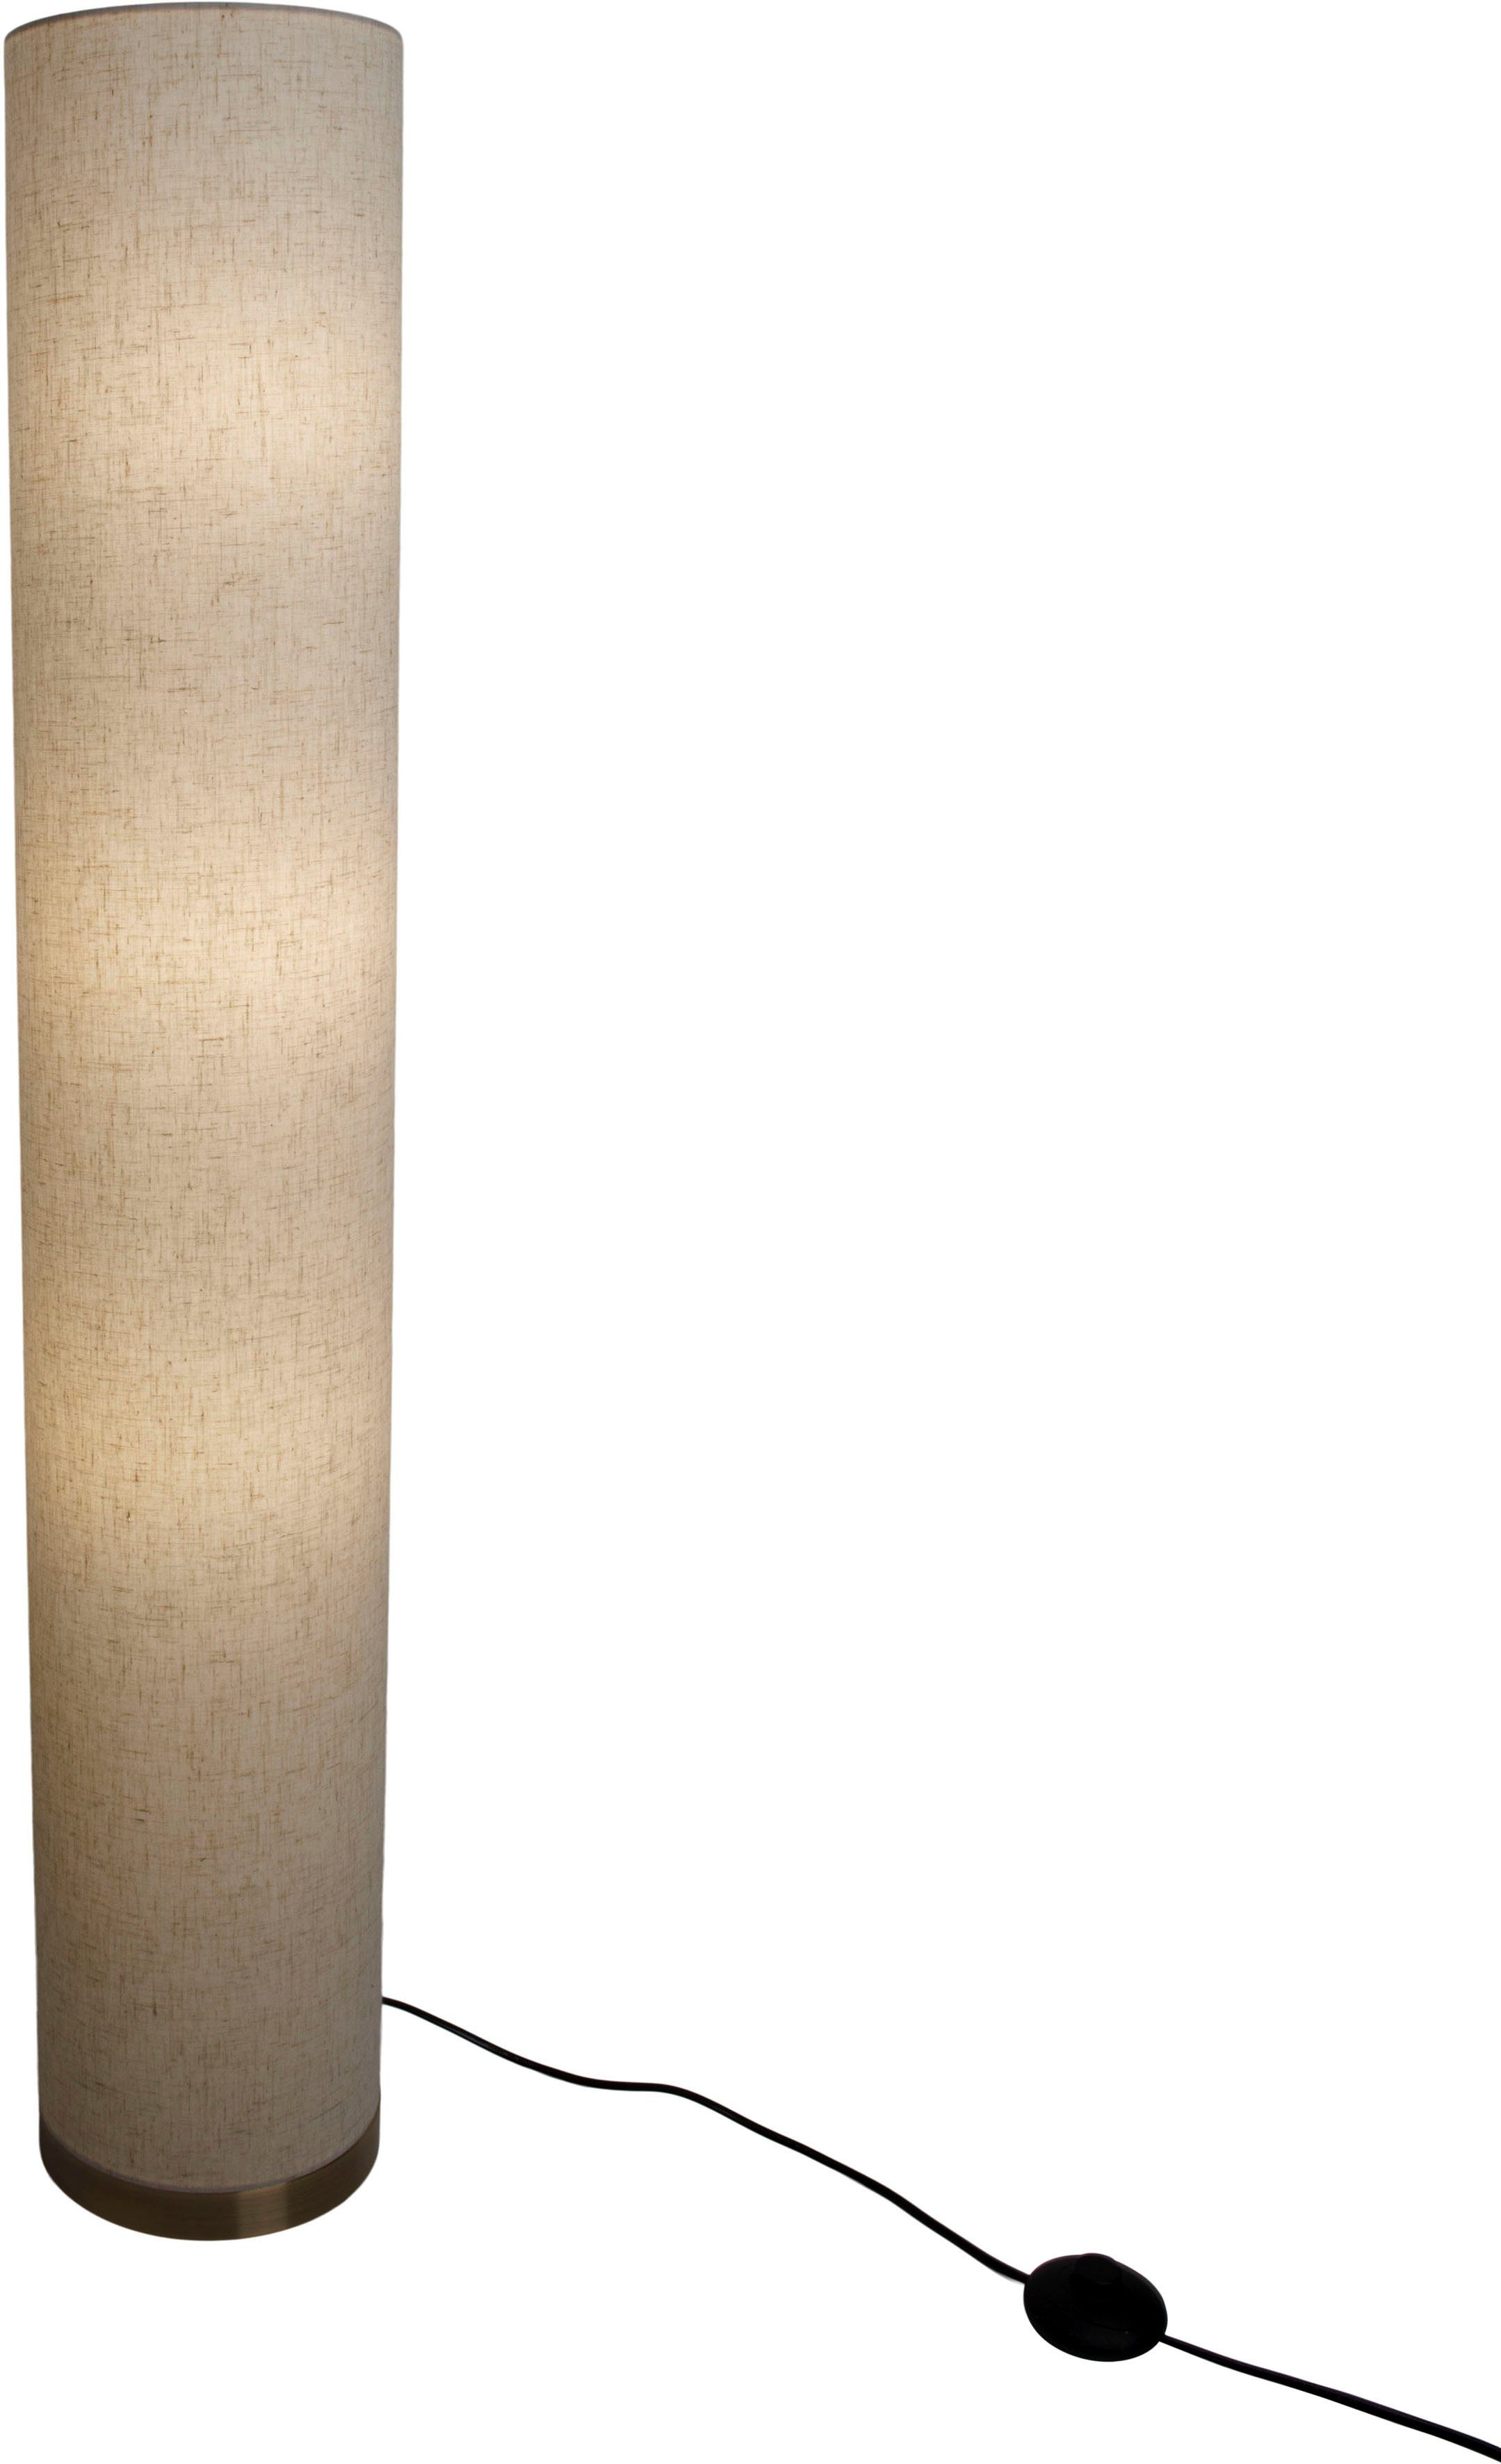 Metall/Textil, Höhe: ohne exkl. näve Ein-/Ausschalter, E27 Leuchtmittel, max. Beate, 110cm, Stehlampe natur Farbe: 40W, 3x